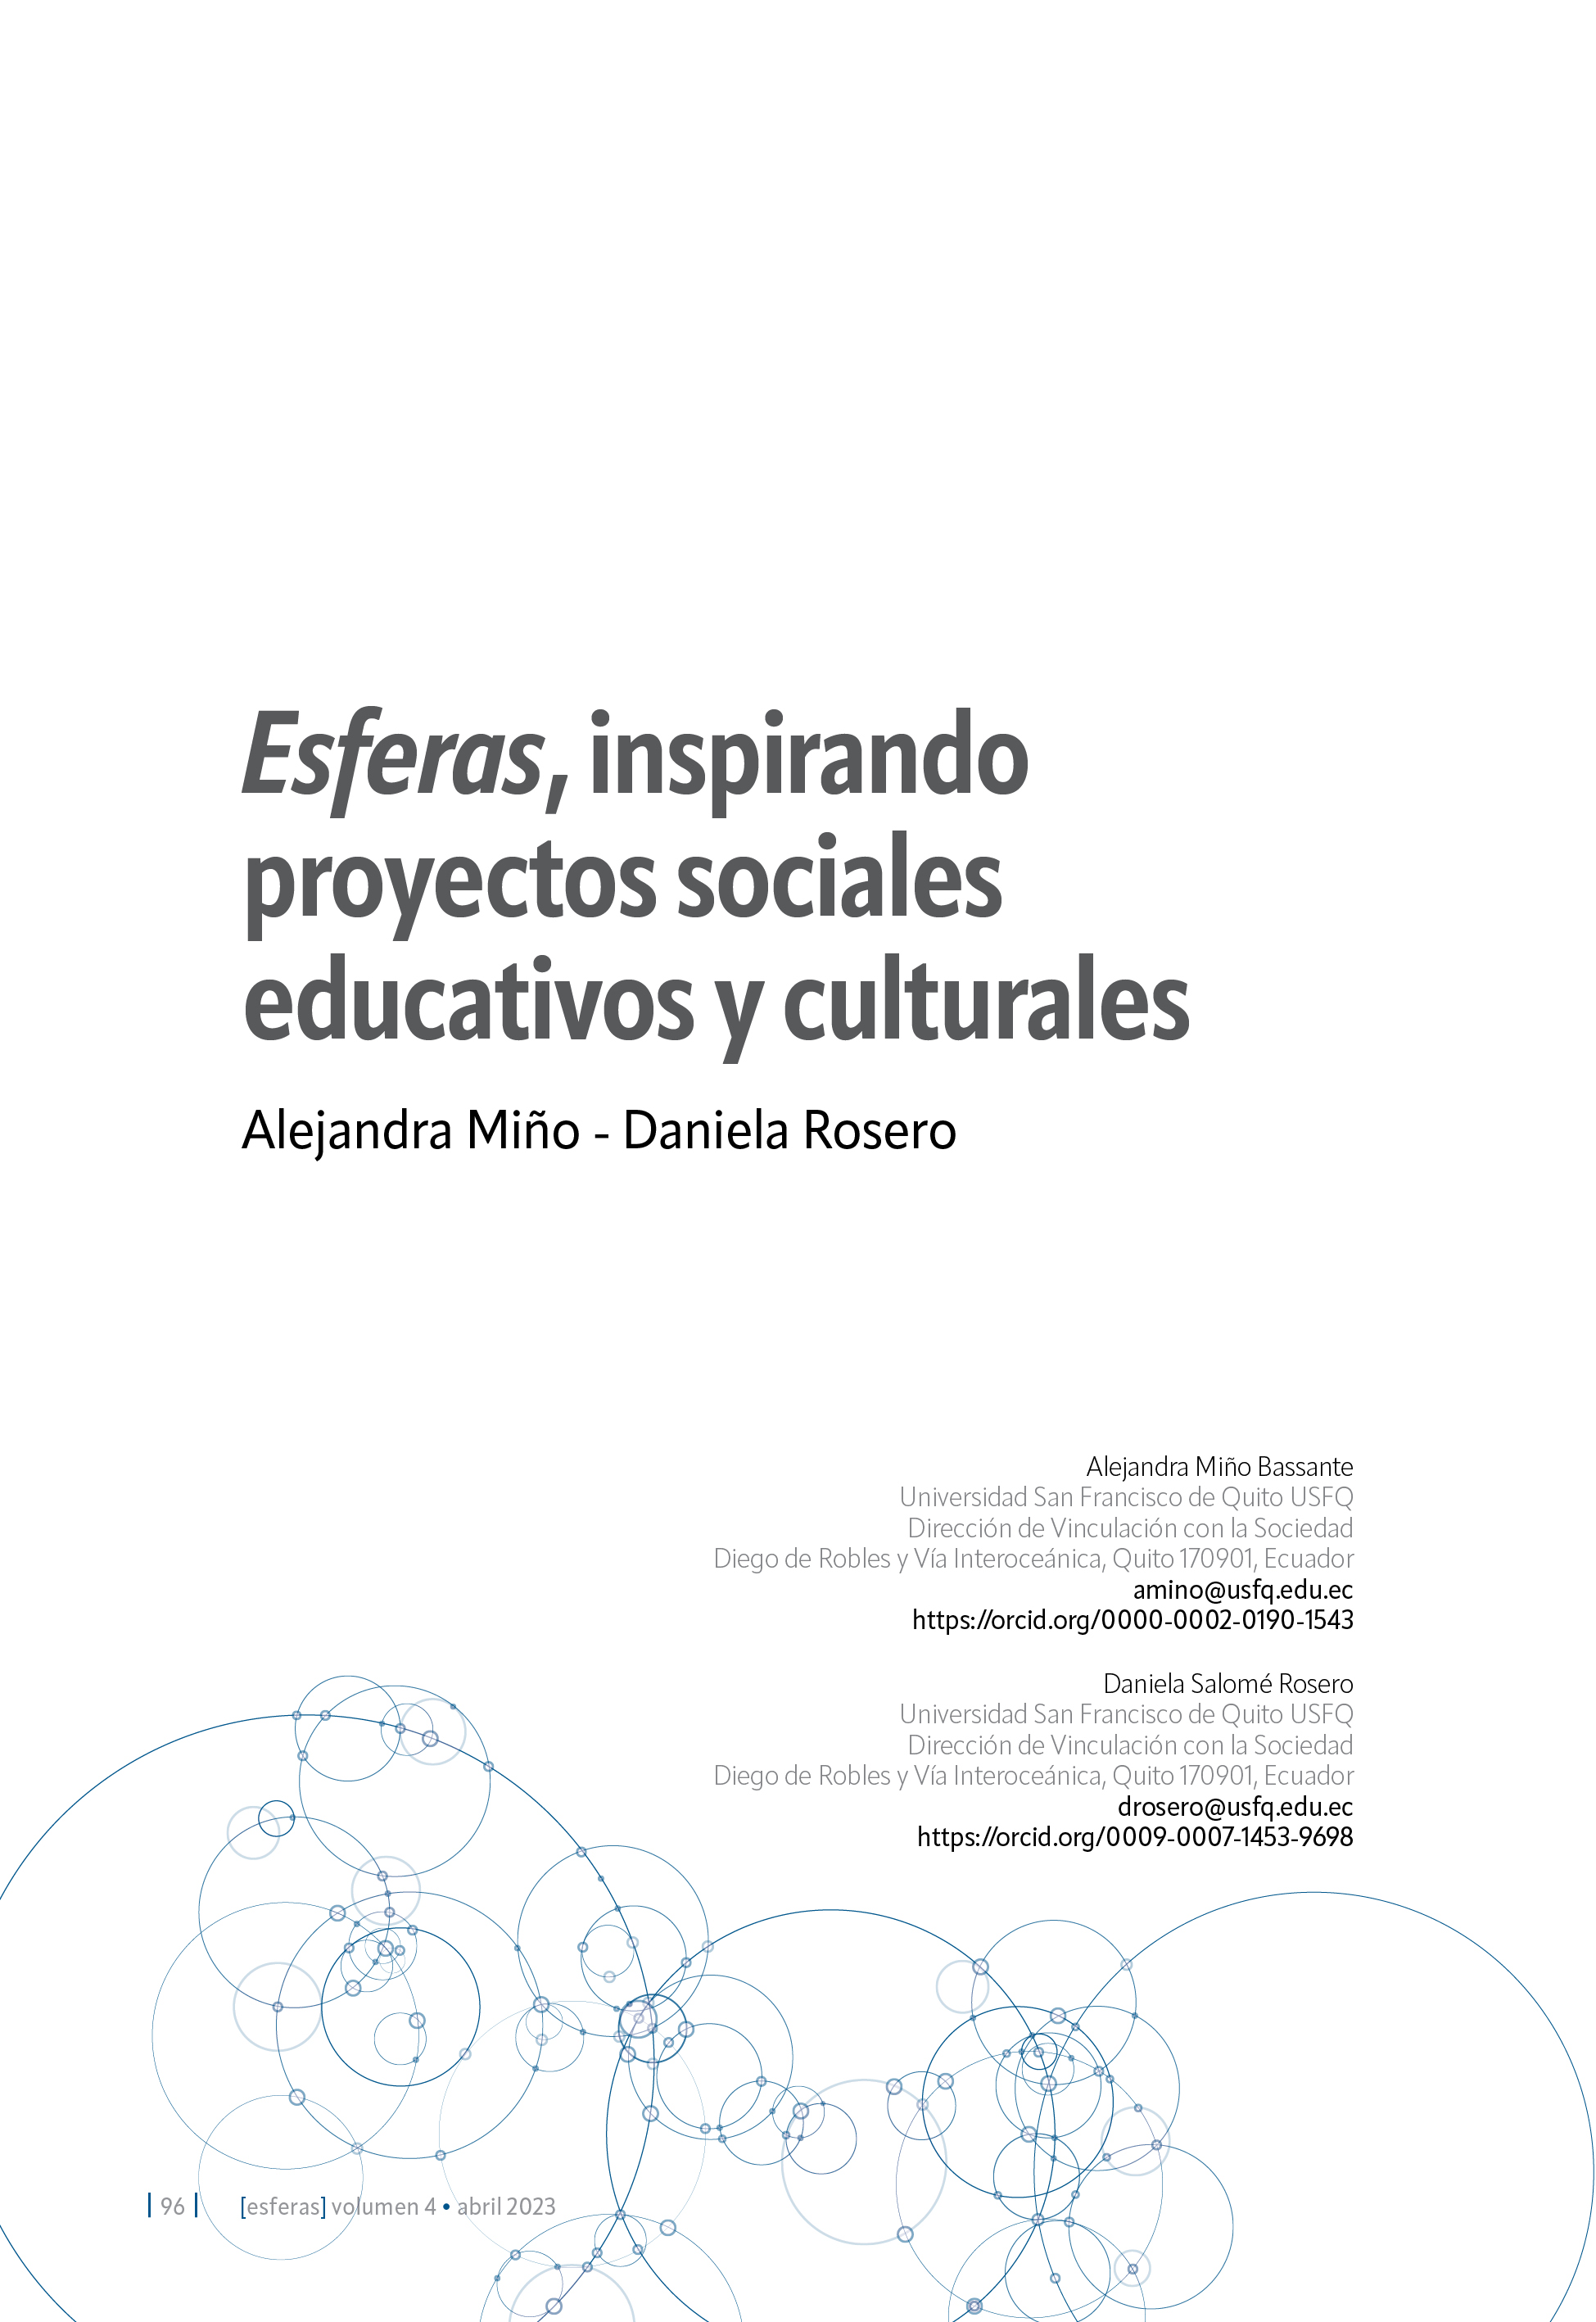 Portada del artículo "Esferas, inspirando proyectos sociales educativos y culturales"